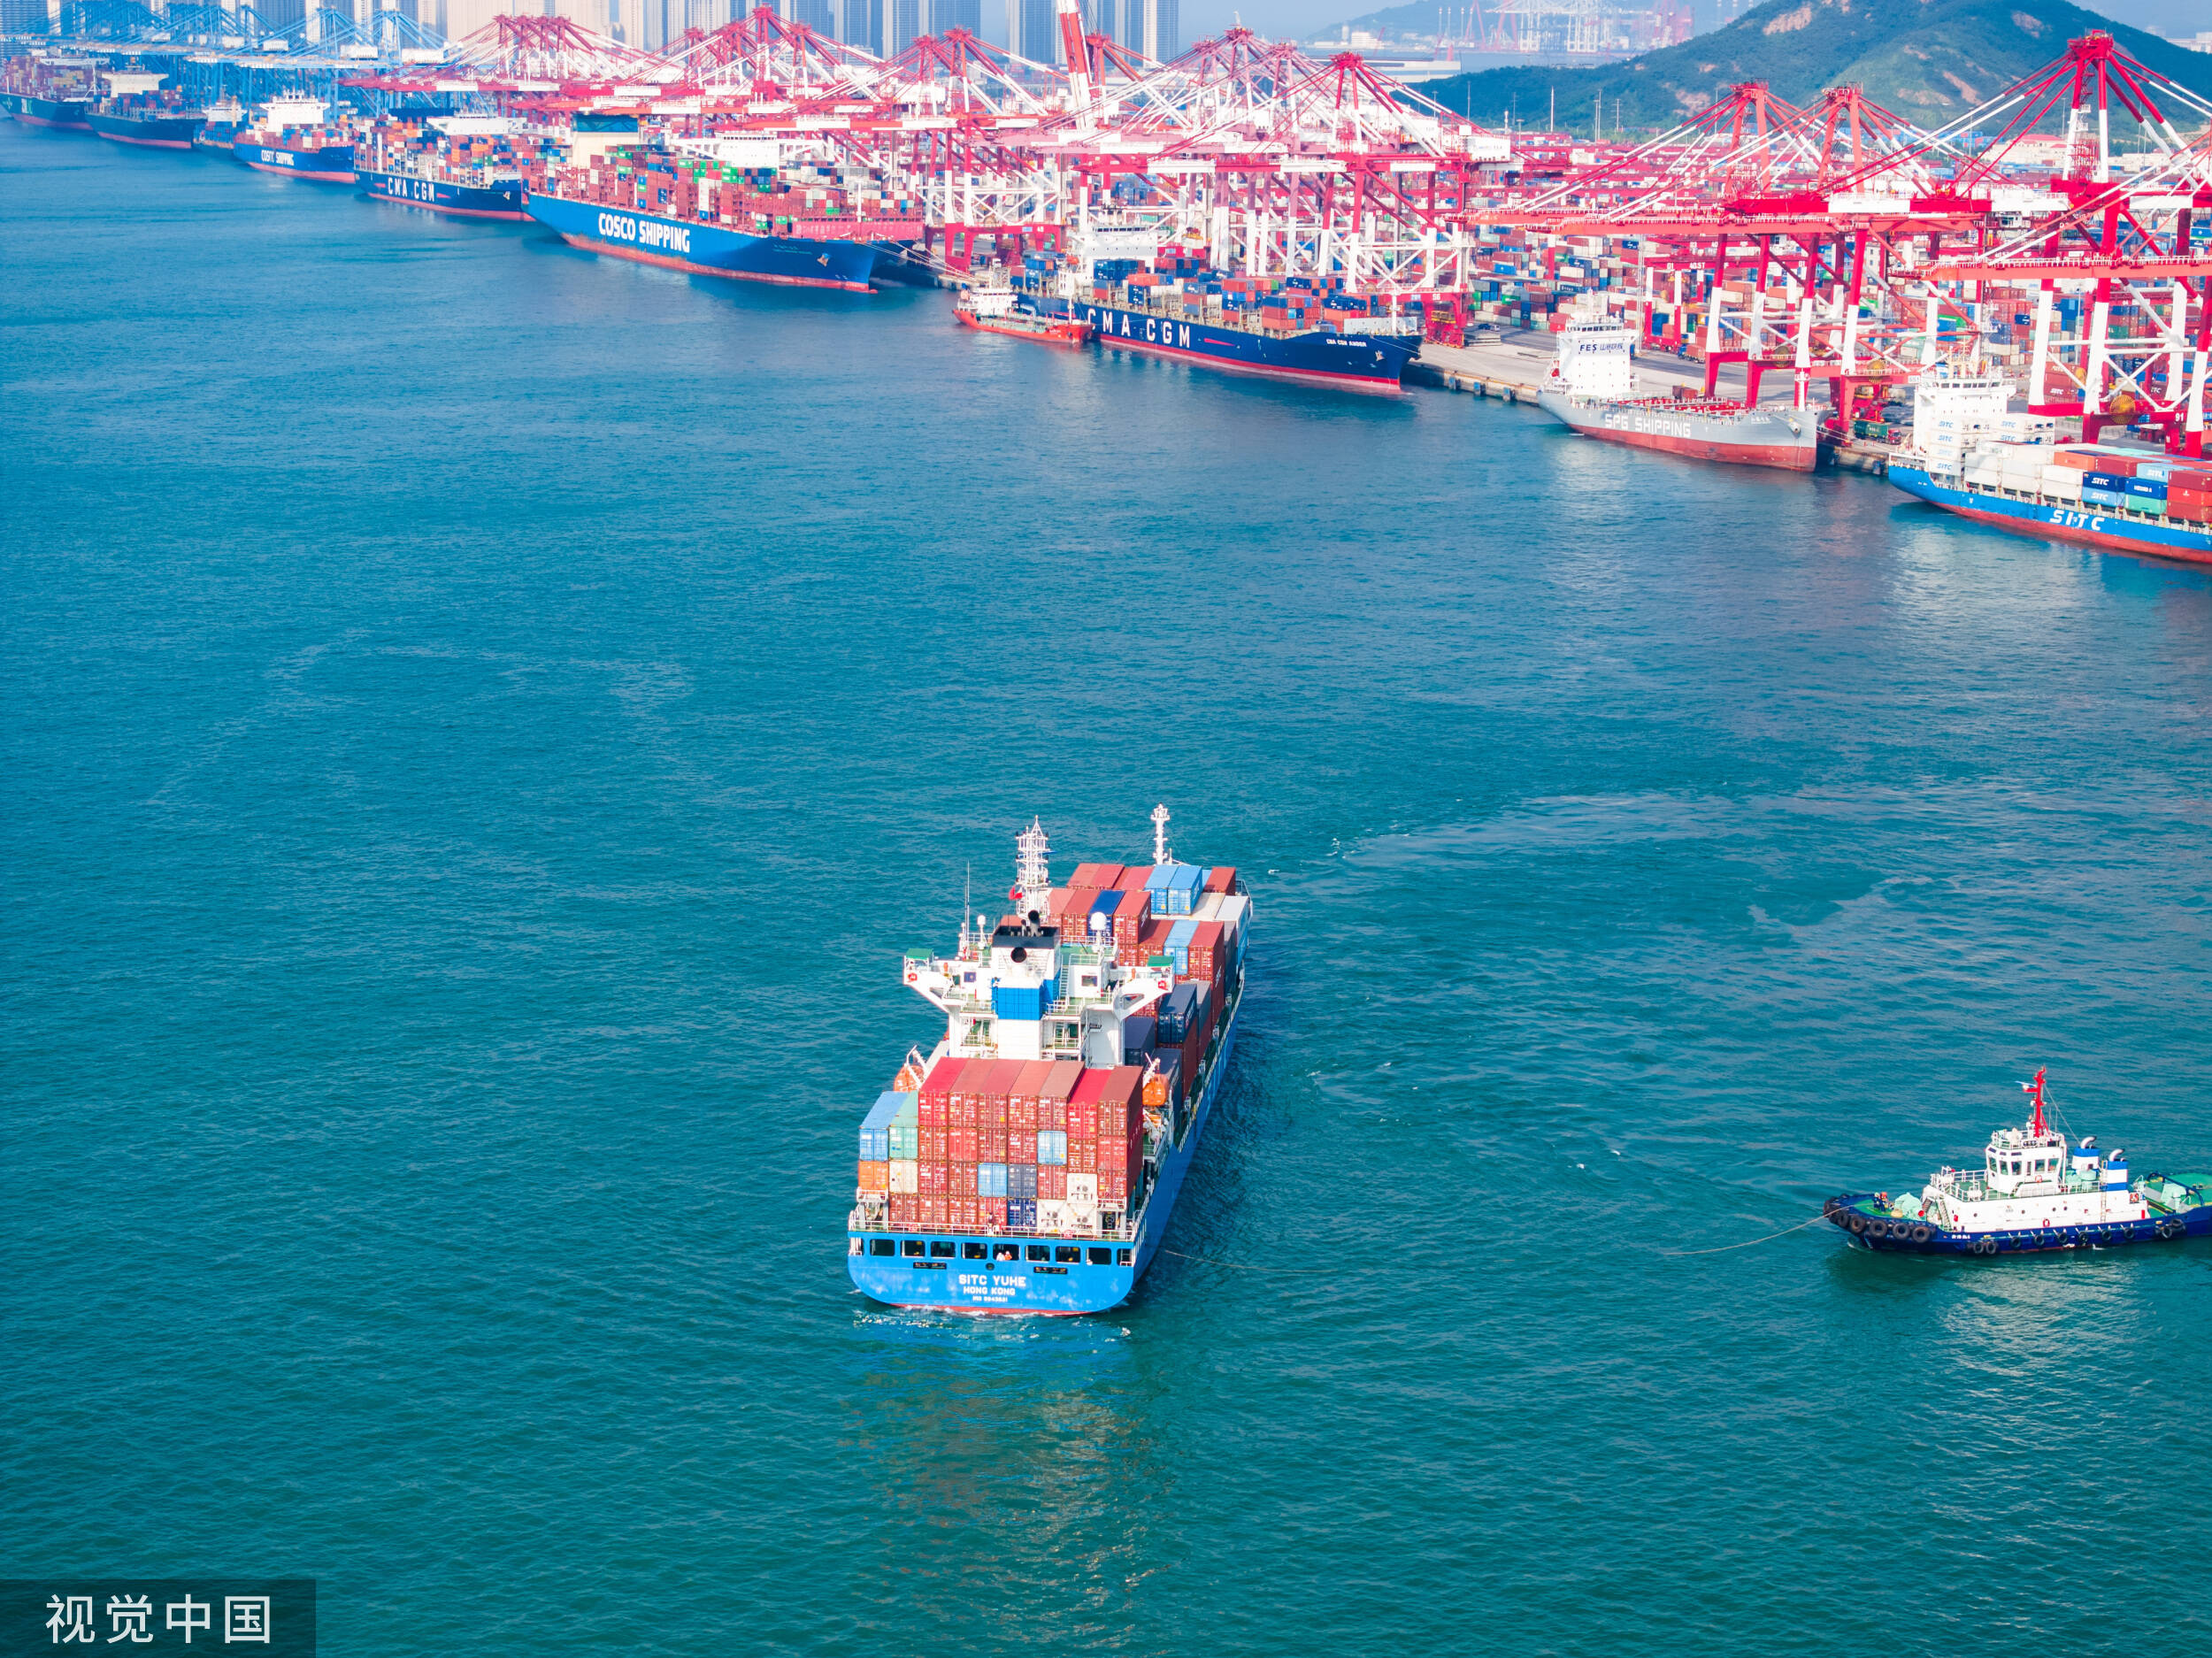 十次打破装卸效率世界纪录 青岛港集装箱自动化吊装运输忙